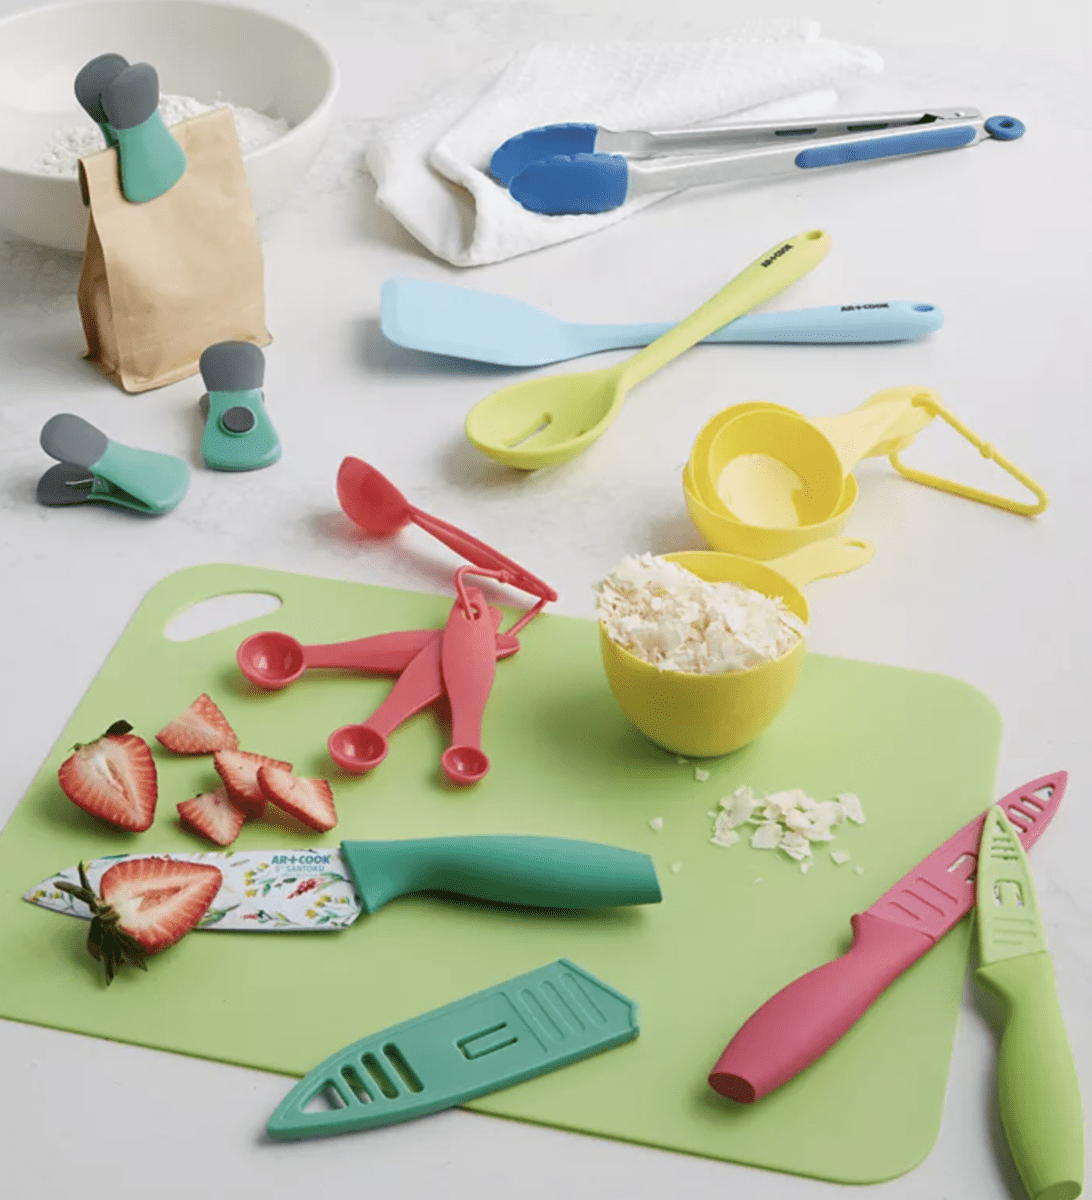 Art & cook gadget & cutlery set